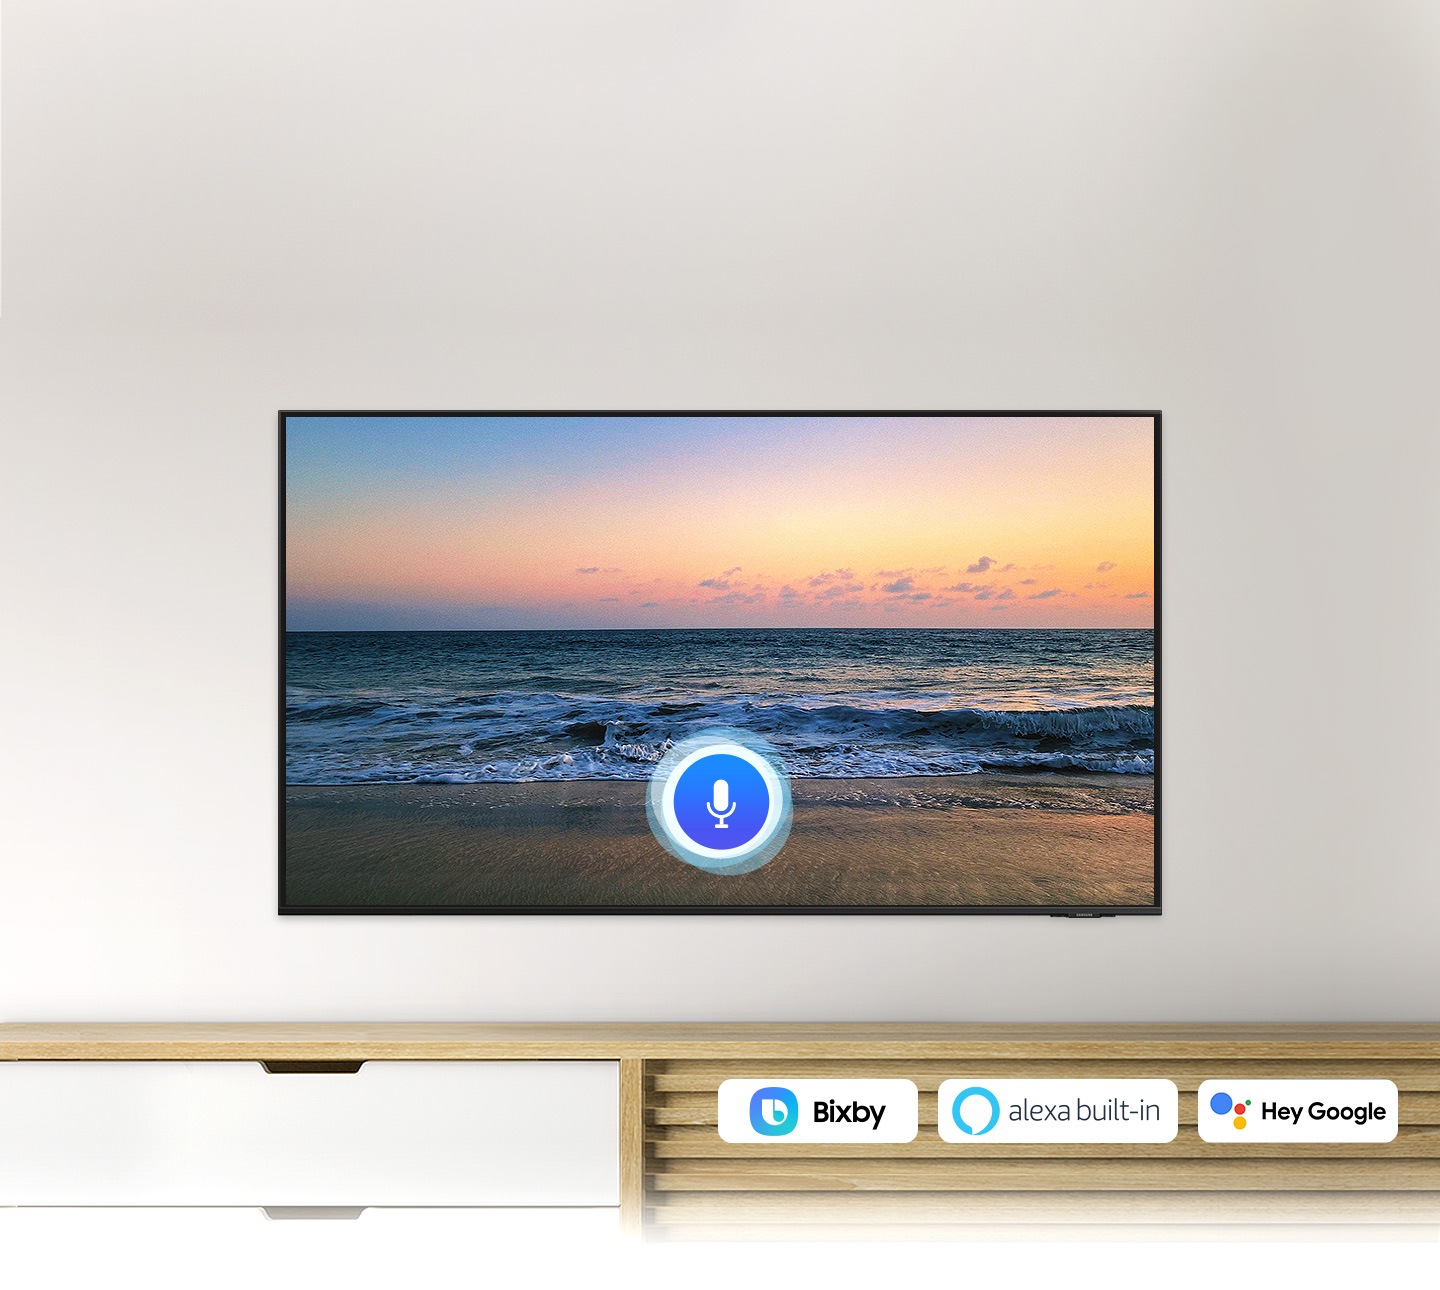 Biểu tượng micrô phủ lên hình ảnh màn hình TV hoàng hôn trên bãi biển, thể hiện tính năng trợ lý giọng nói TV UHD.